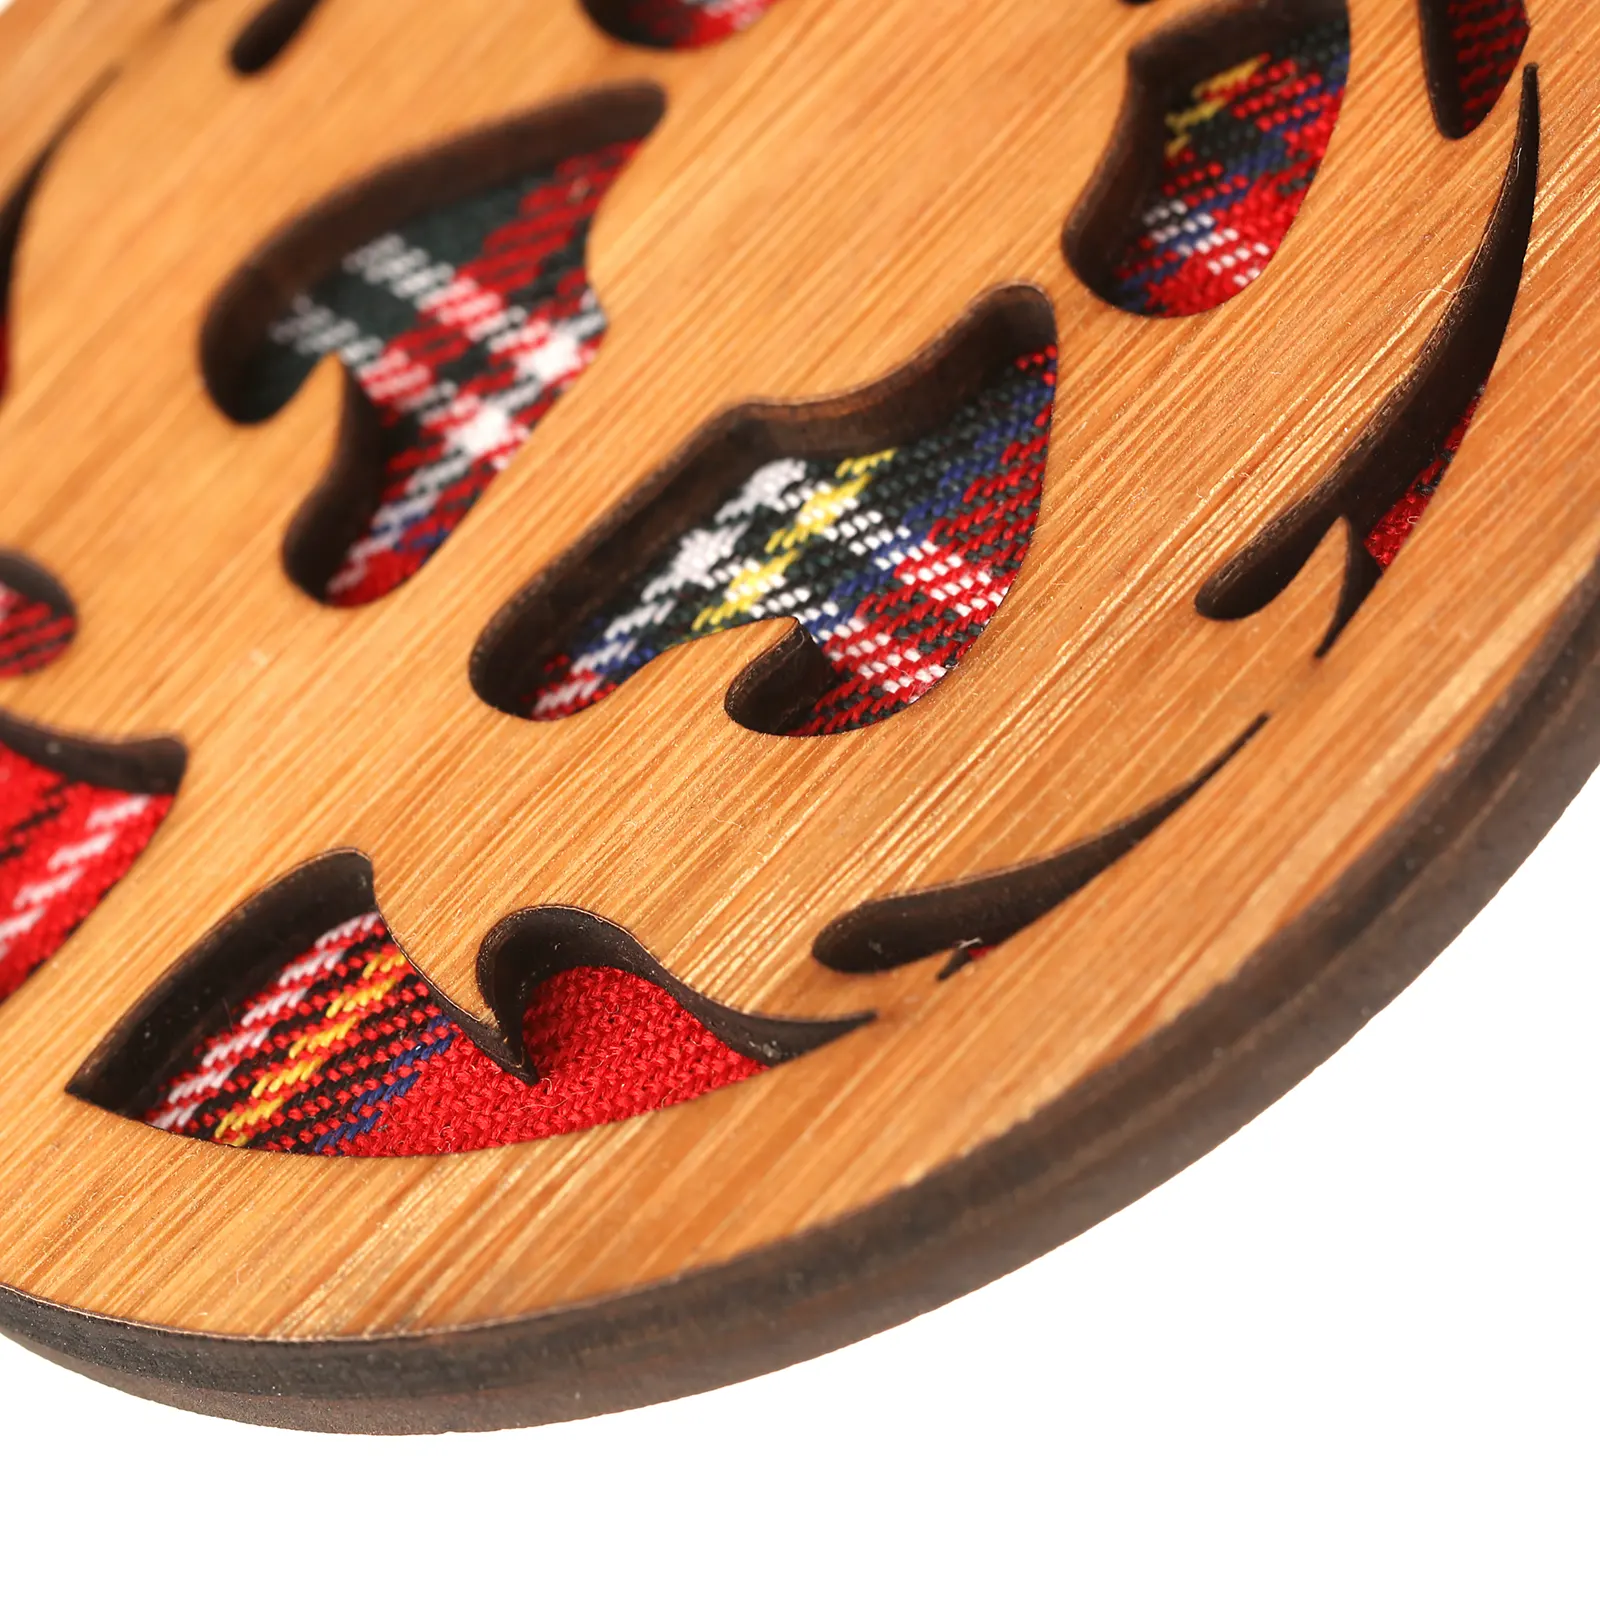 Scottish Thistle - Runder Holz-Aufhänger mit schottischer Distel und Tartan-Hintergrund